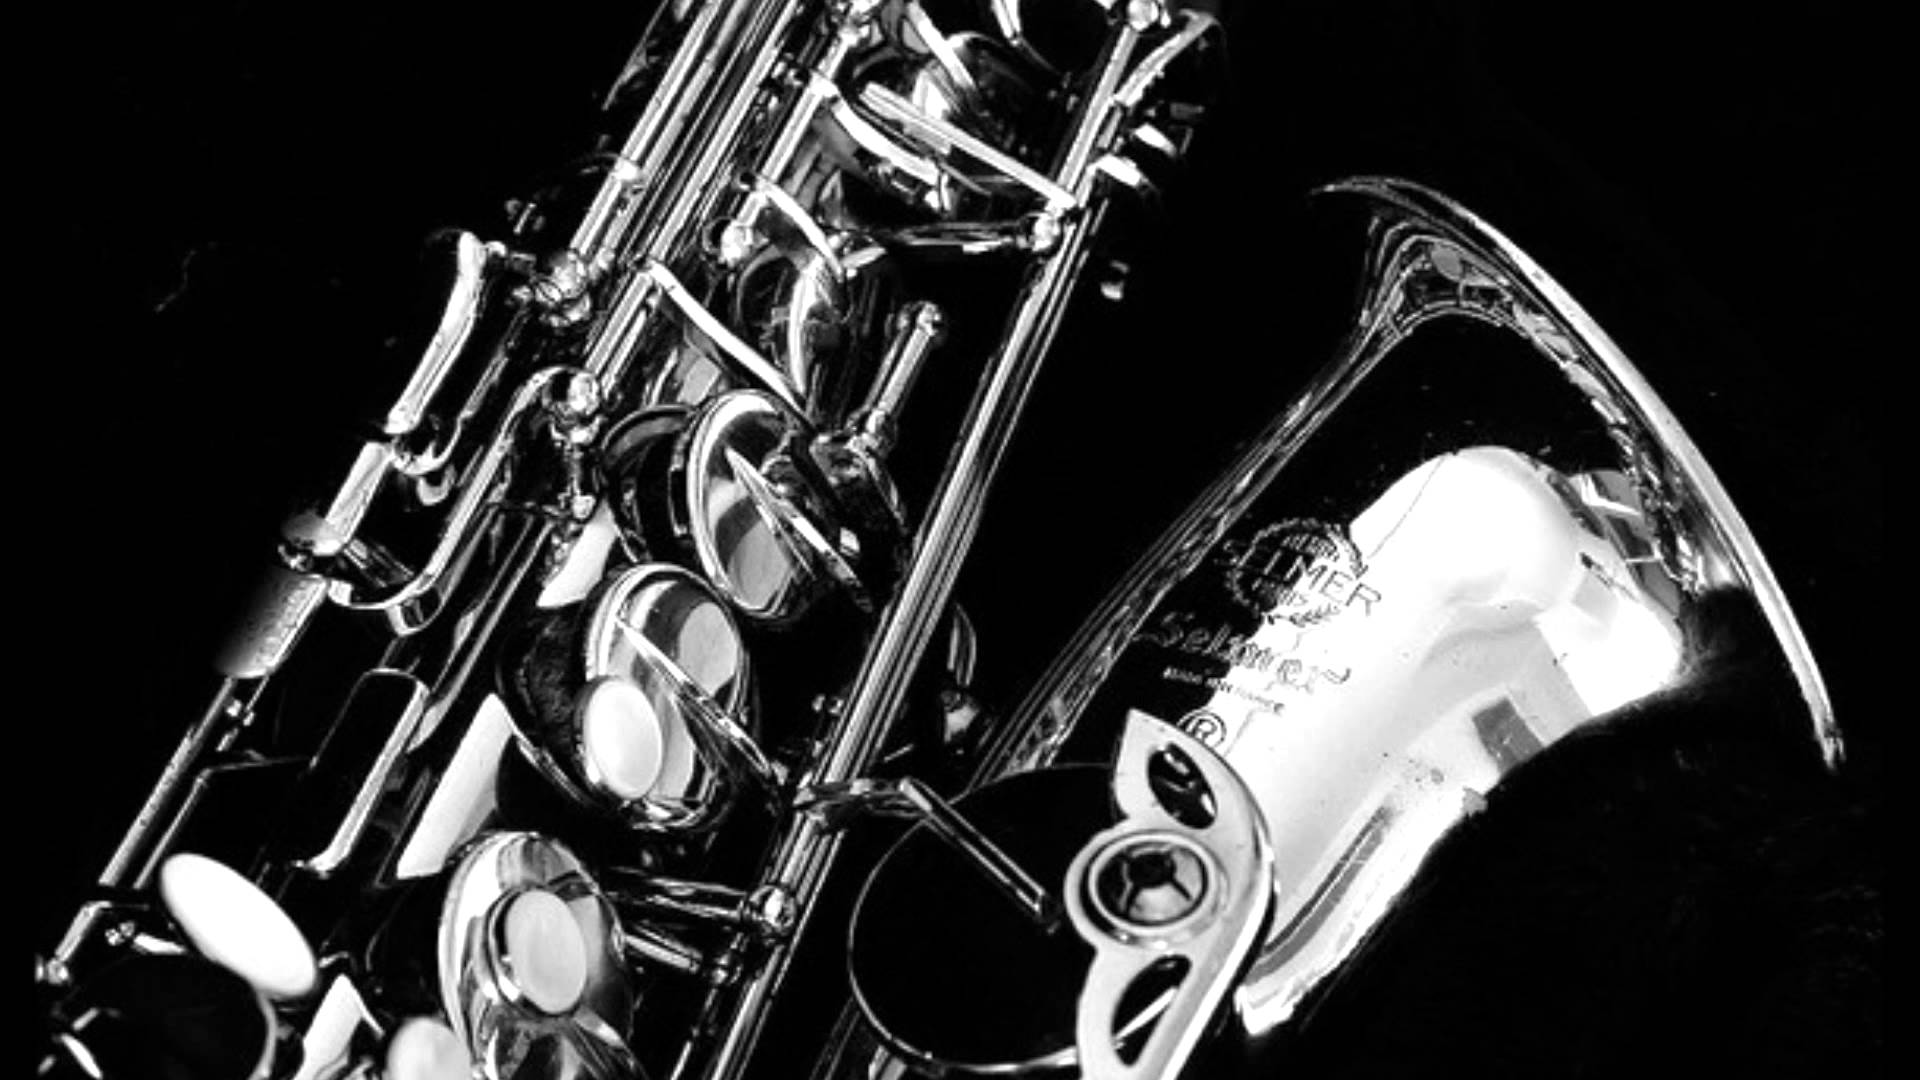 Sax Wallpaper - Black And White Saxophone - HD Wallpaper 